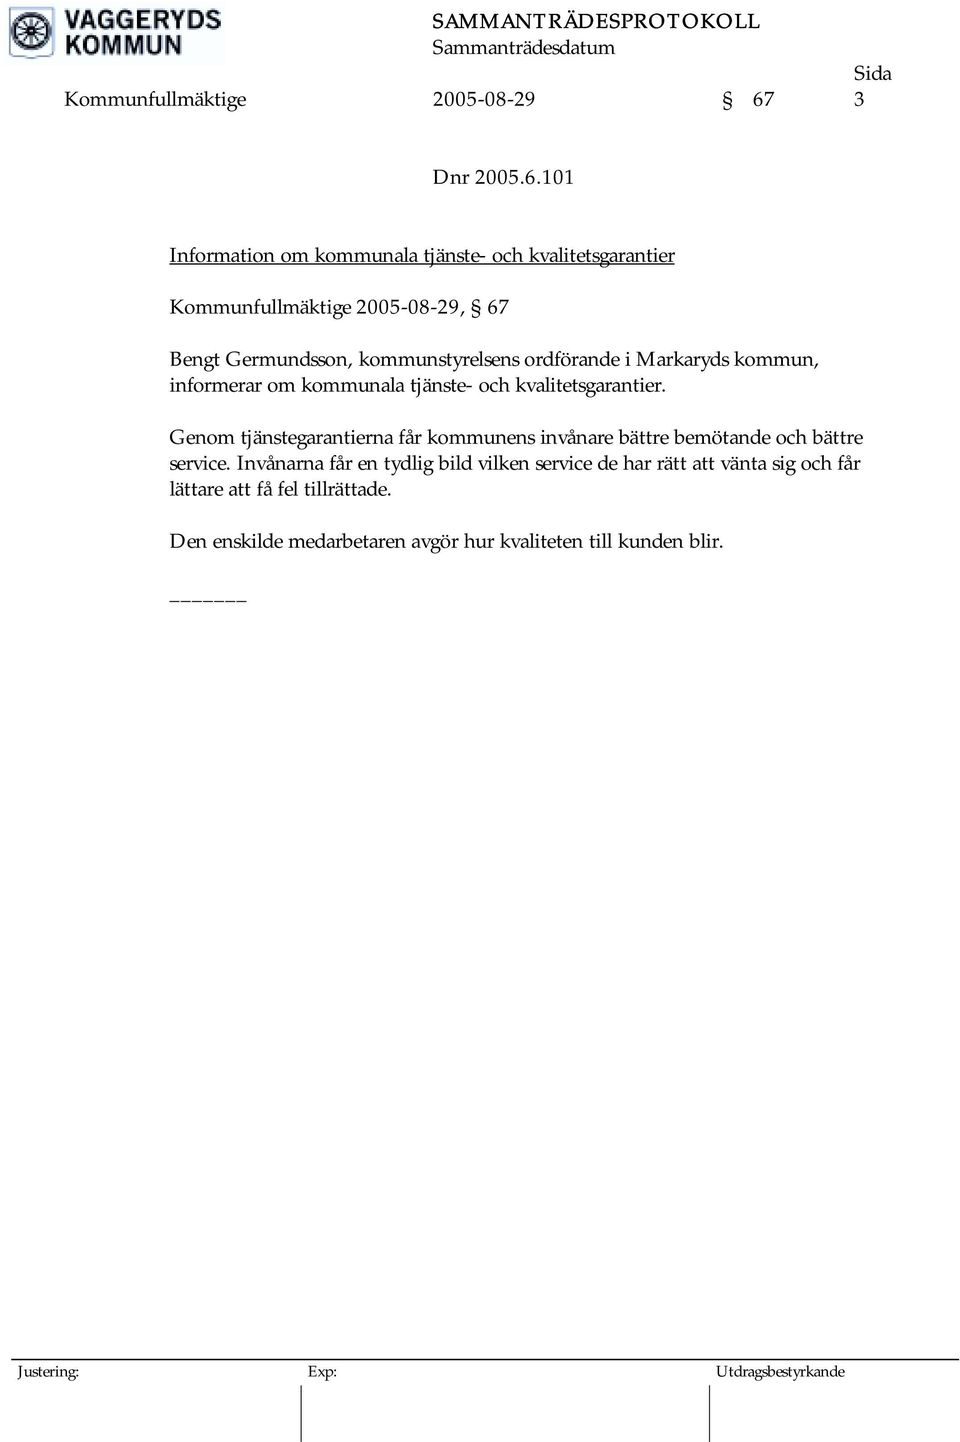 101 Information om kommunala tjänste- och kvalitetsgarantier Kommunfullmäktige 2005-08-29, 67 Bengt Germundsson, kommunstyrelsens